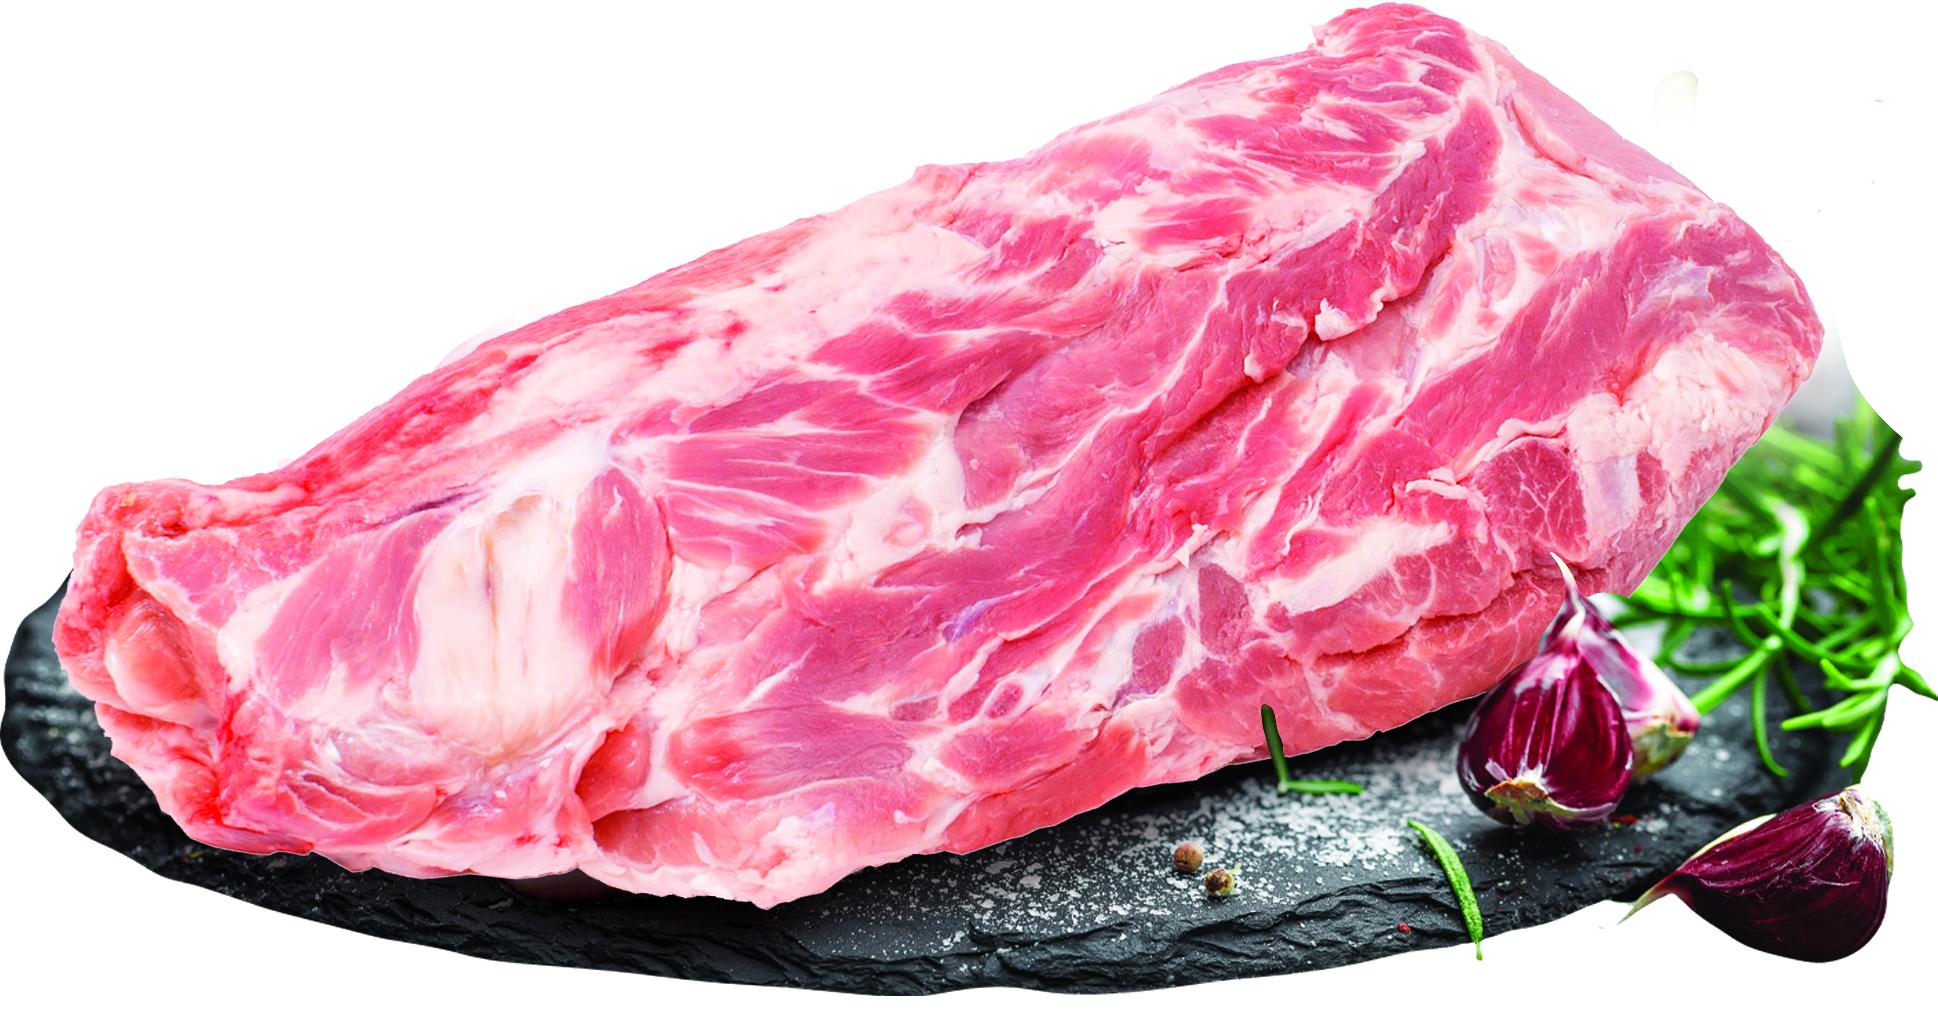 Slika za Svinjski vrat Domaća mesara 1kg